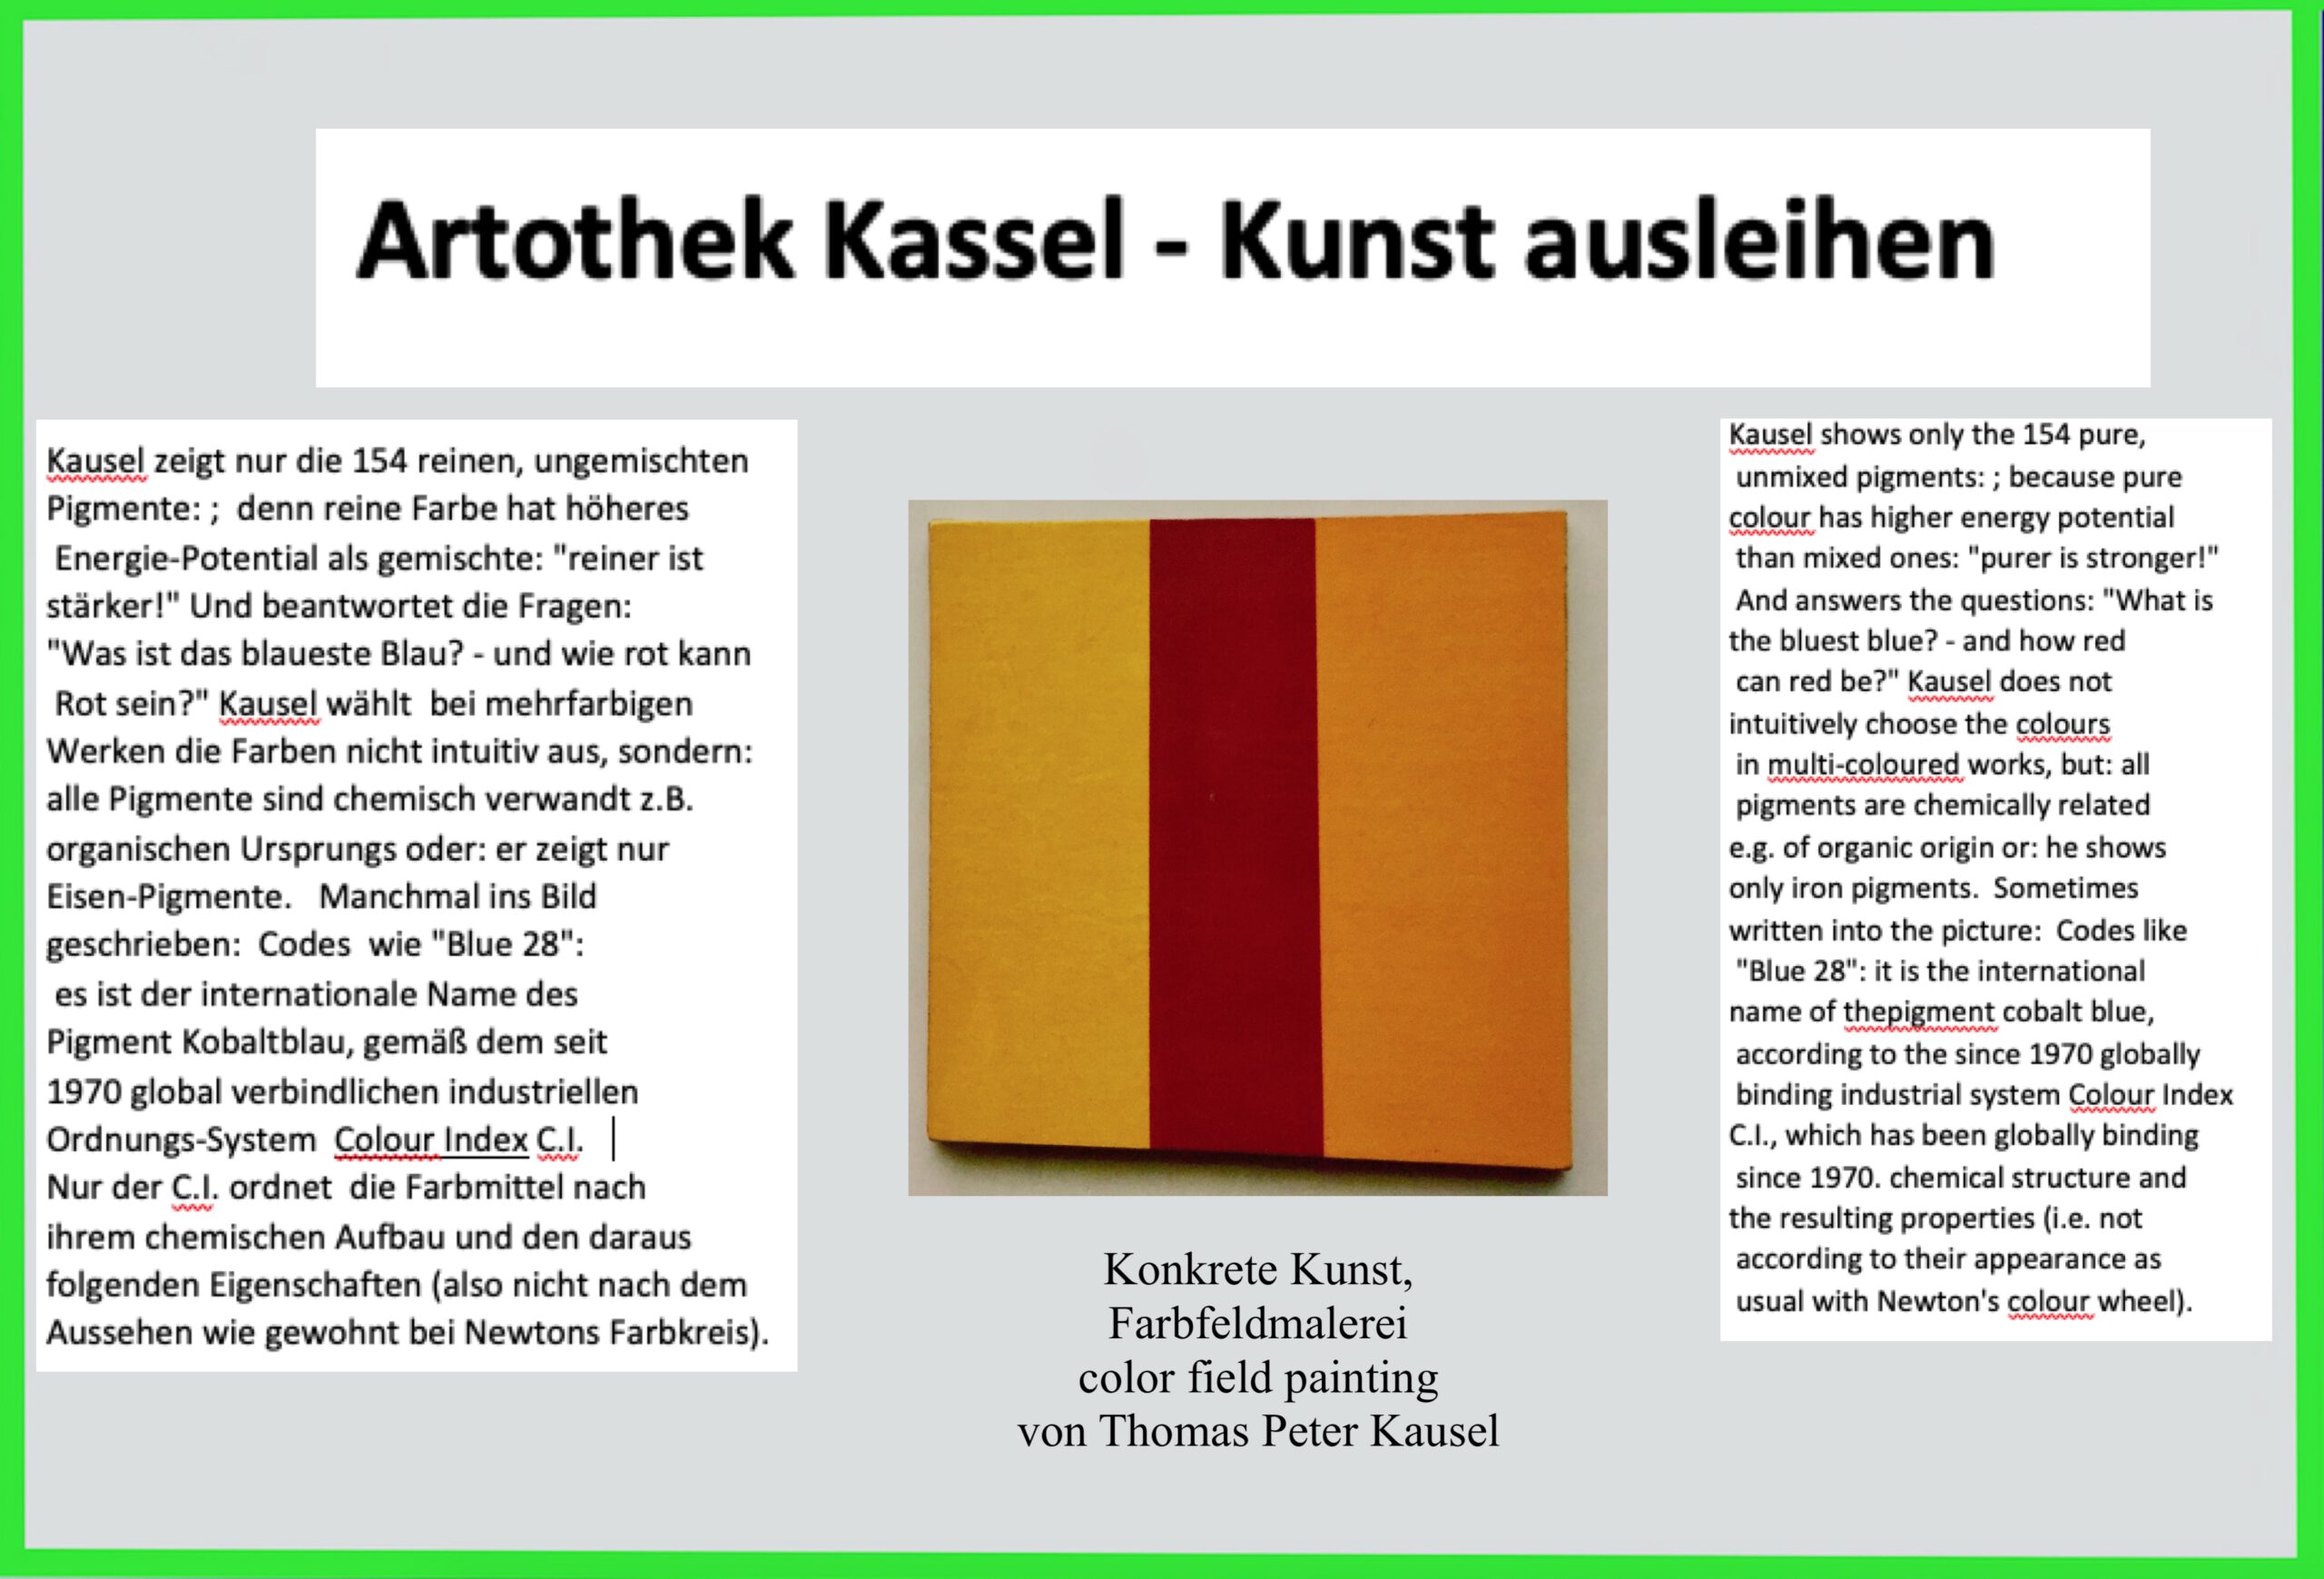 Artothek Kassel